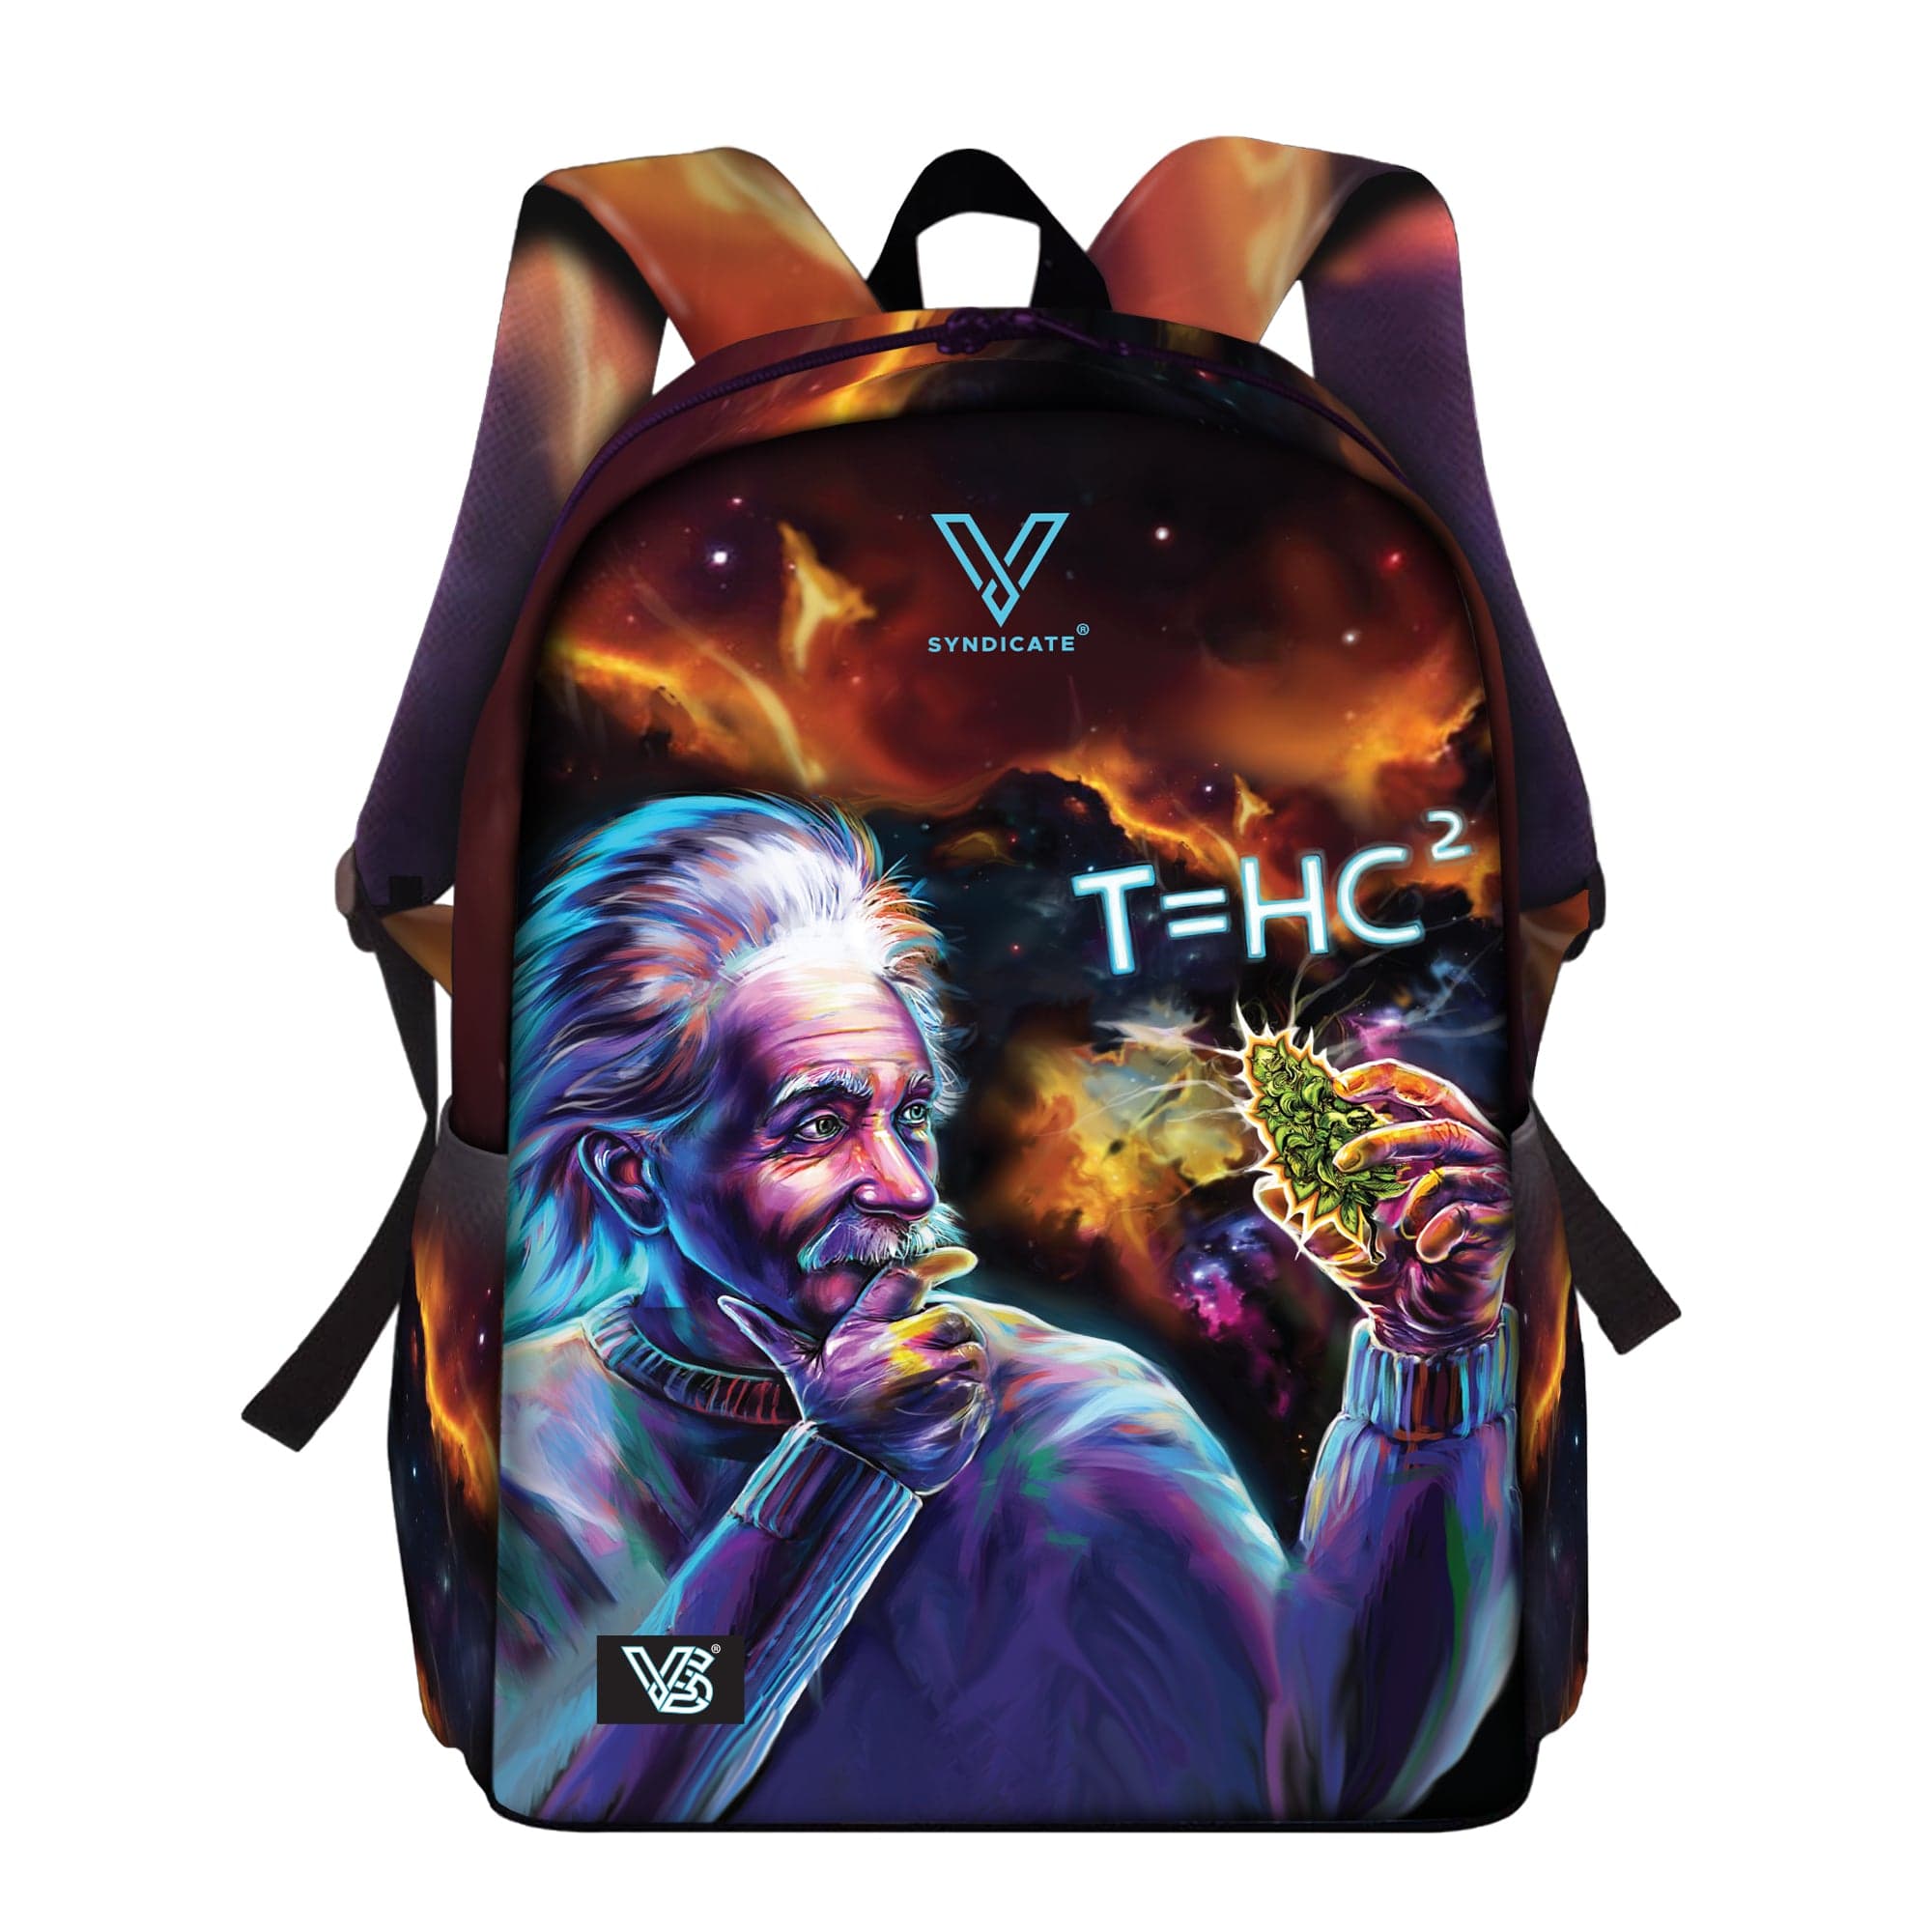 T=Hc2 Einstein Black Hole Way Bag Backpack